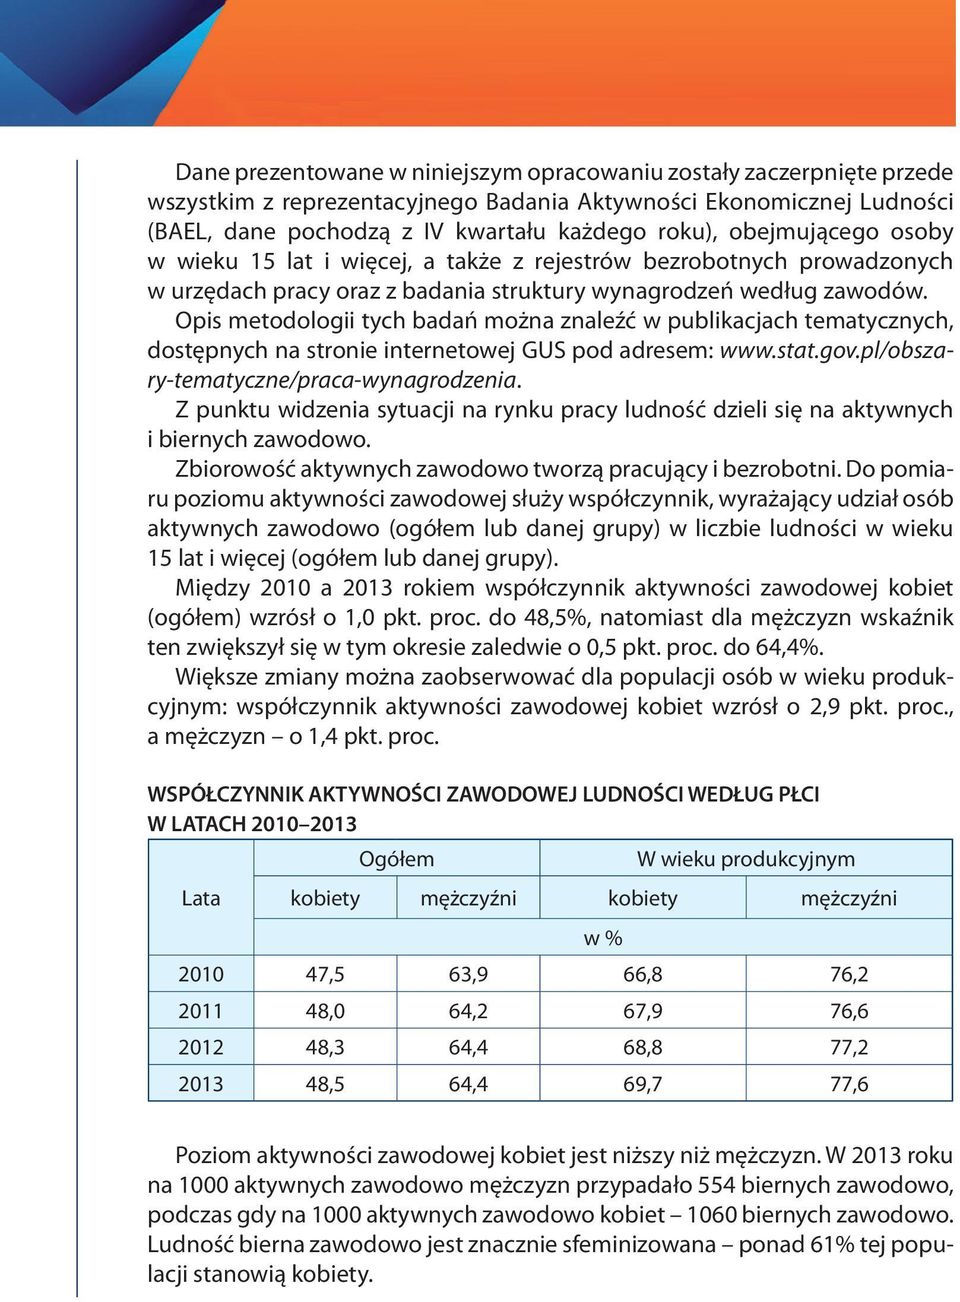 Opis metodologii tych badań można znaleźć w publikacjach tematycznych, dostępnych na stronie internetowej GUS pod adresem: www.stat.gov.pl/obszary-tematyczne/praca-wynagrodzenia.